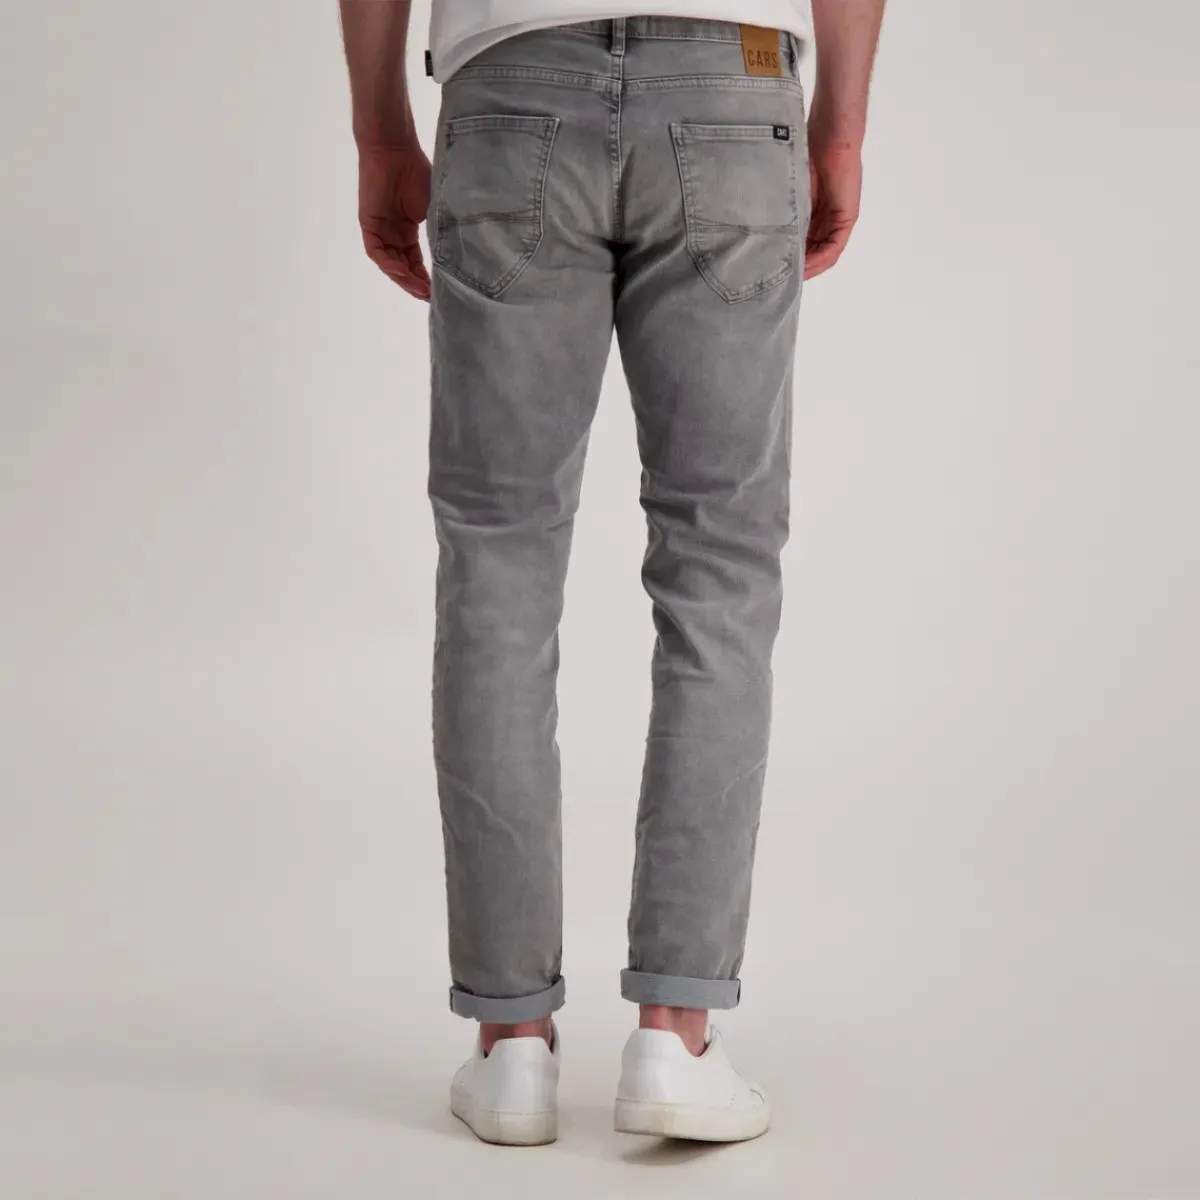 Jeans Slim Grey Used. Broeken Binkie